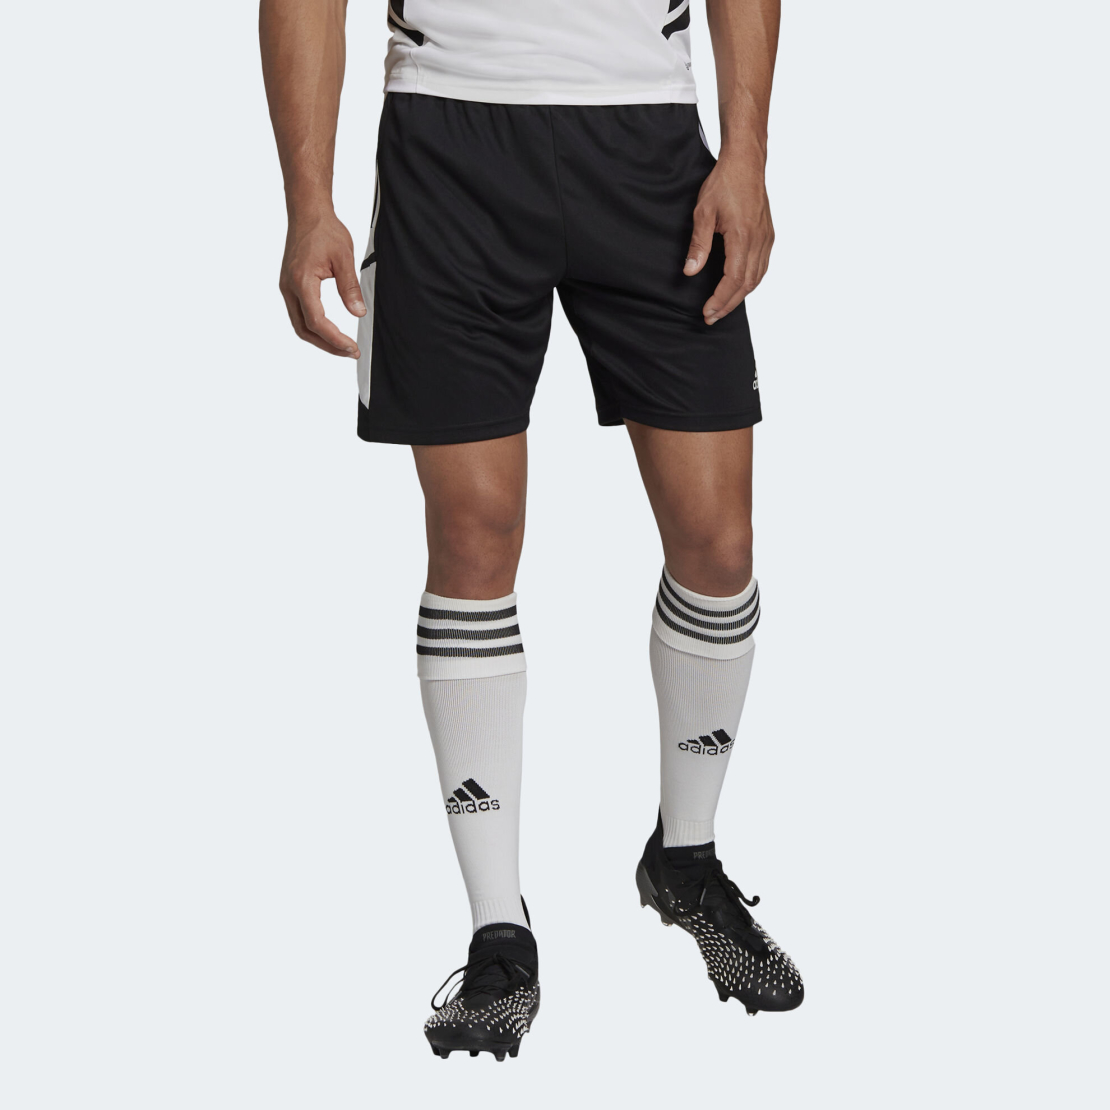 שורט כדורגל אדידס לגברים | Adidas Condivo 22 TR Shorts